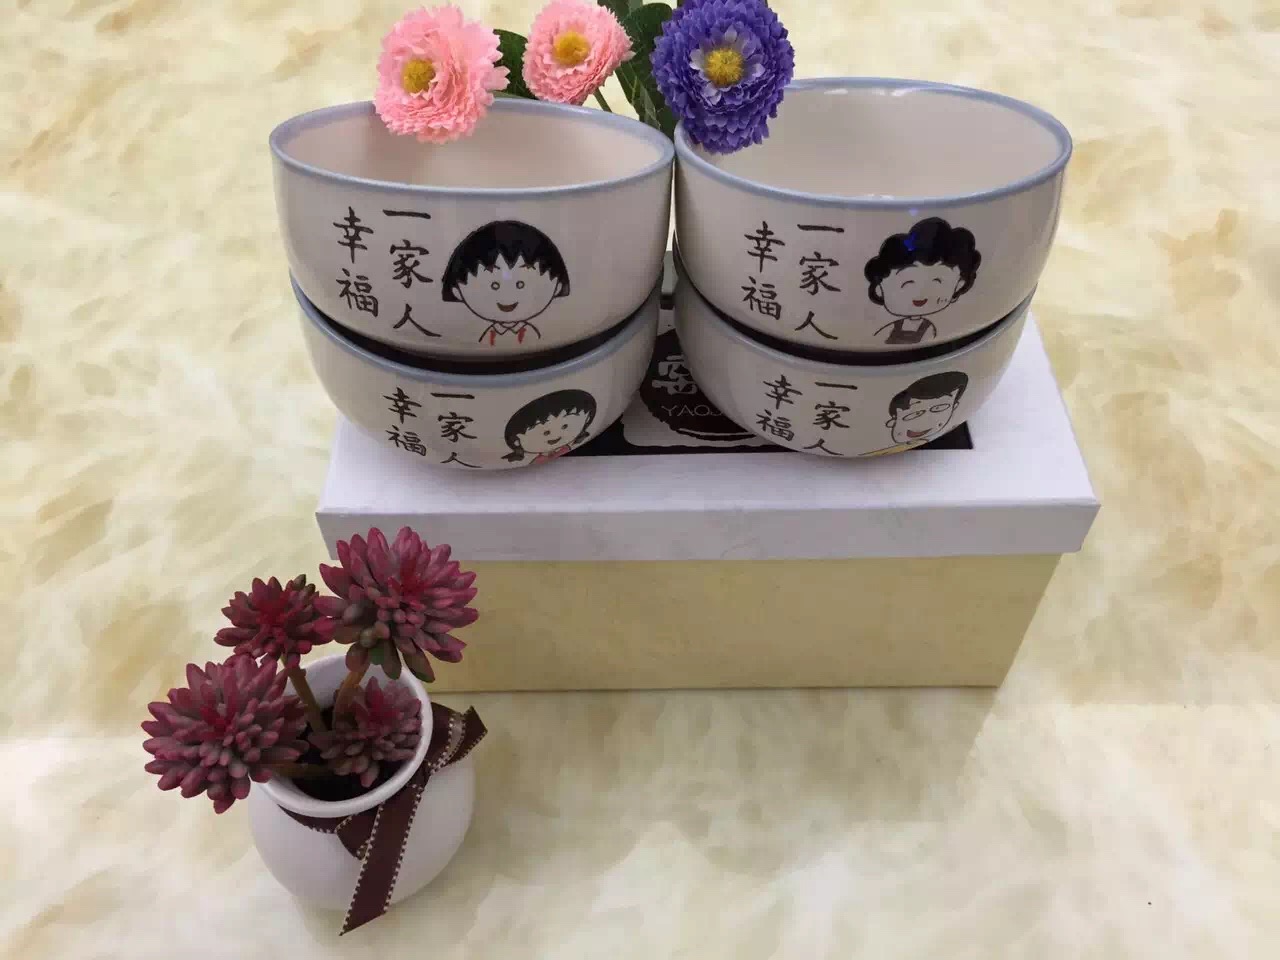 包邮米饭碗日式卡通饭碗套装樱桃小丸子一家人陶瓷米饭碗礼盒套装